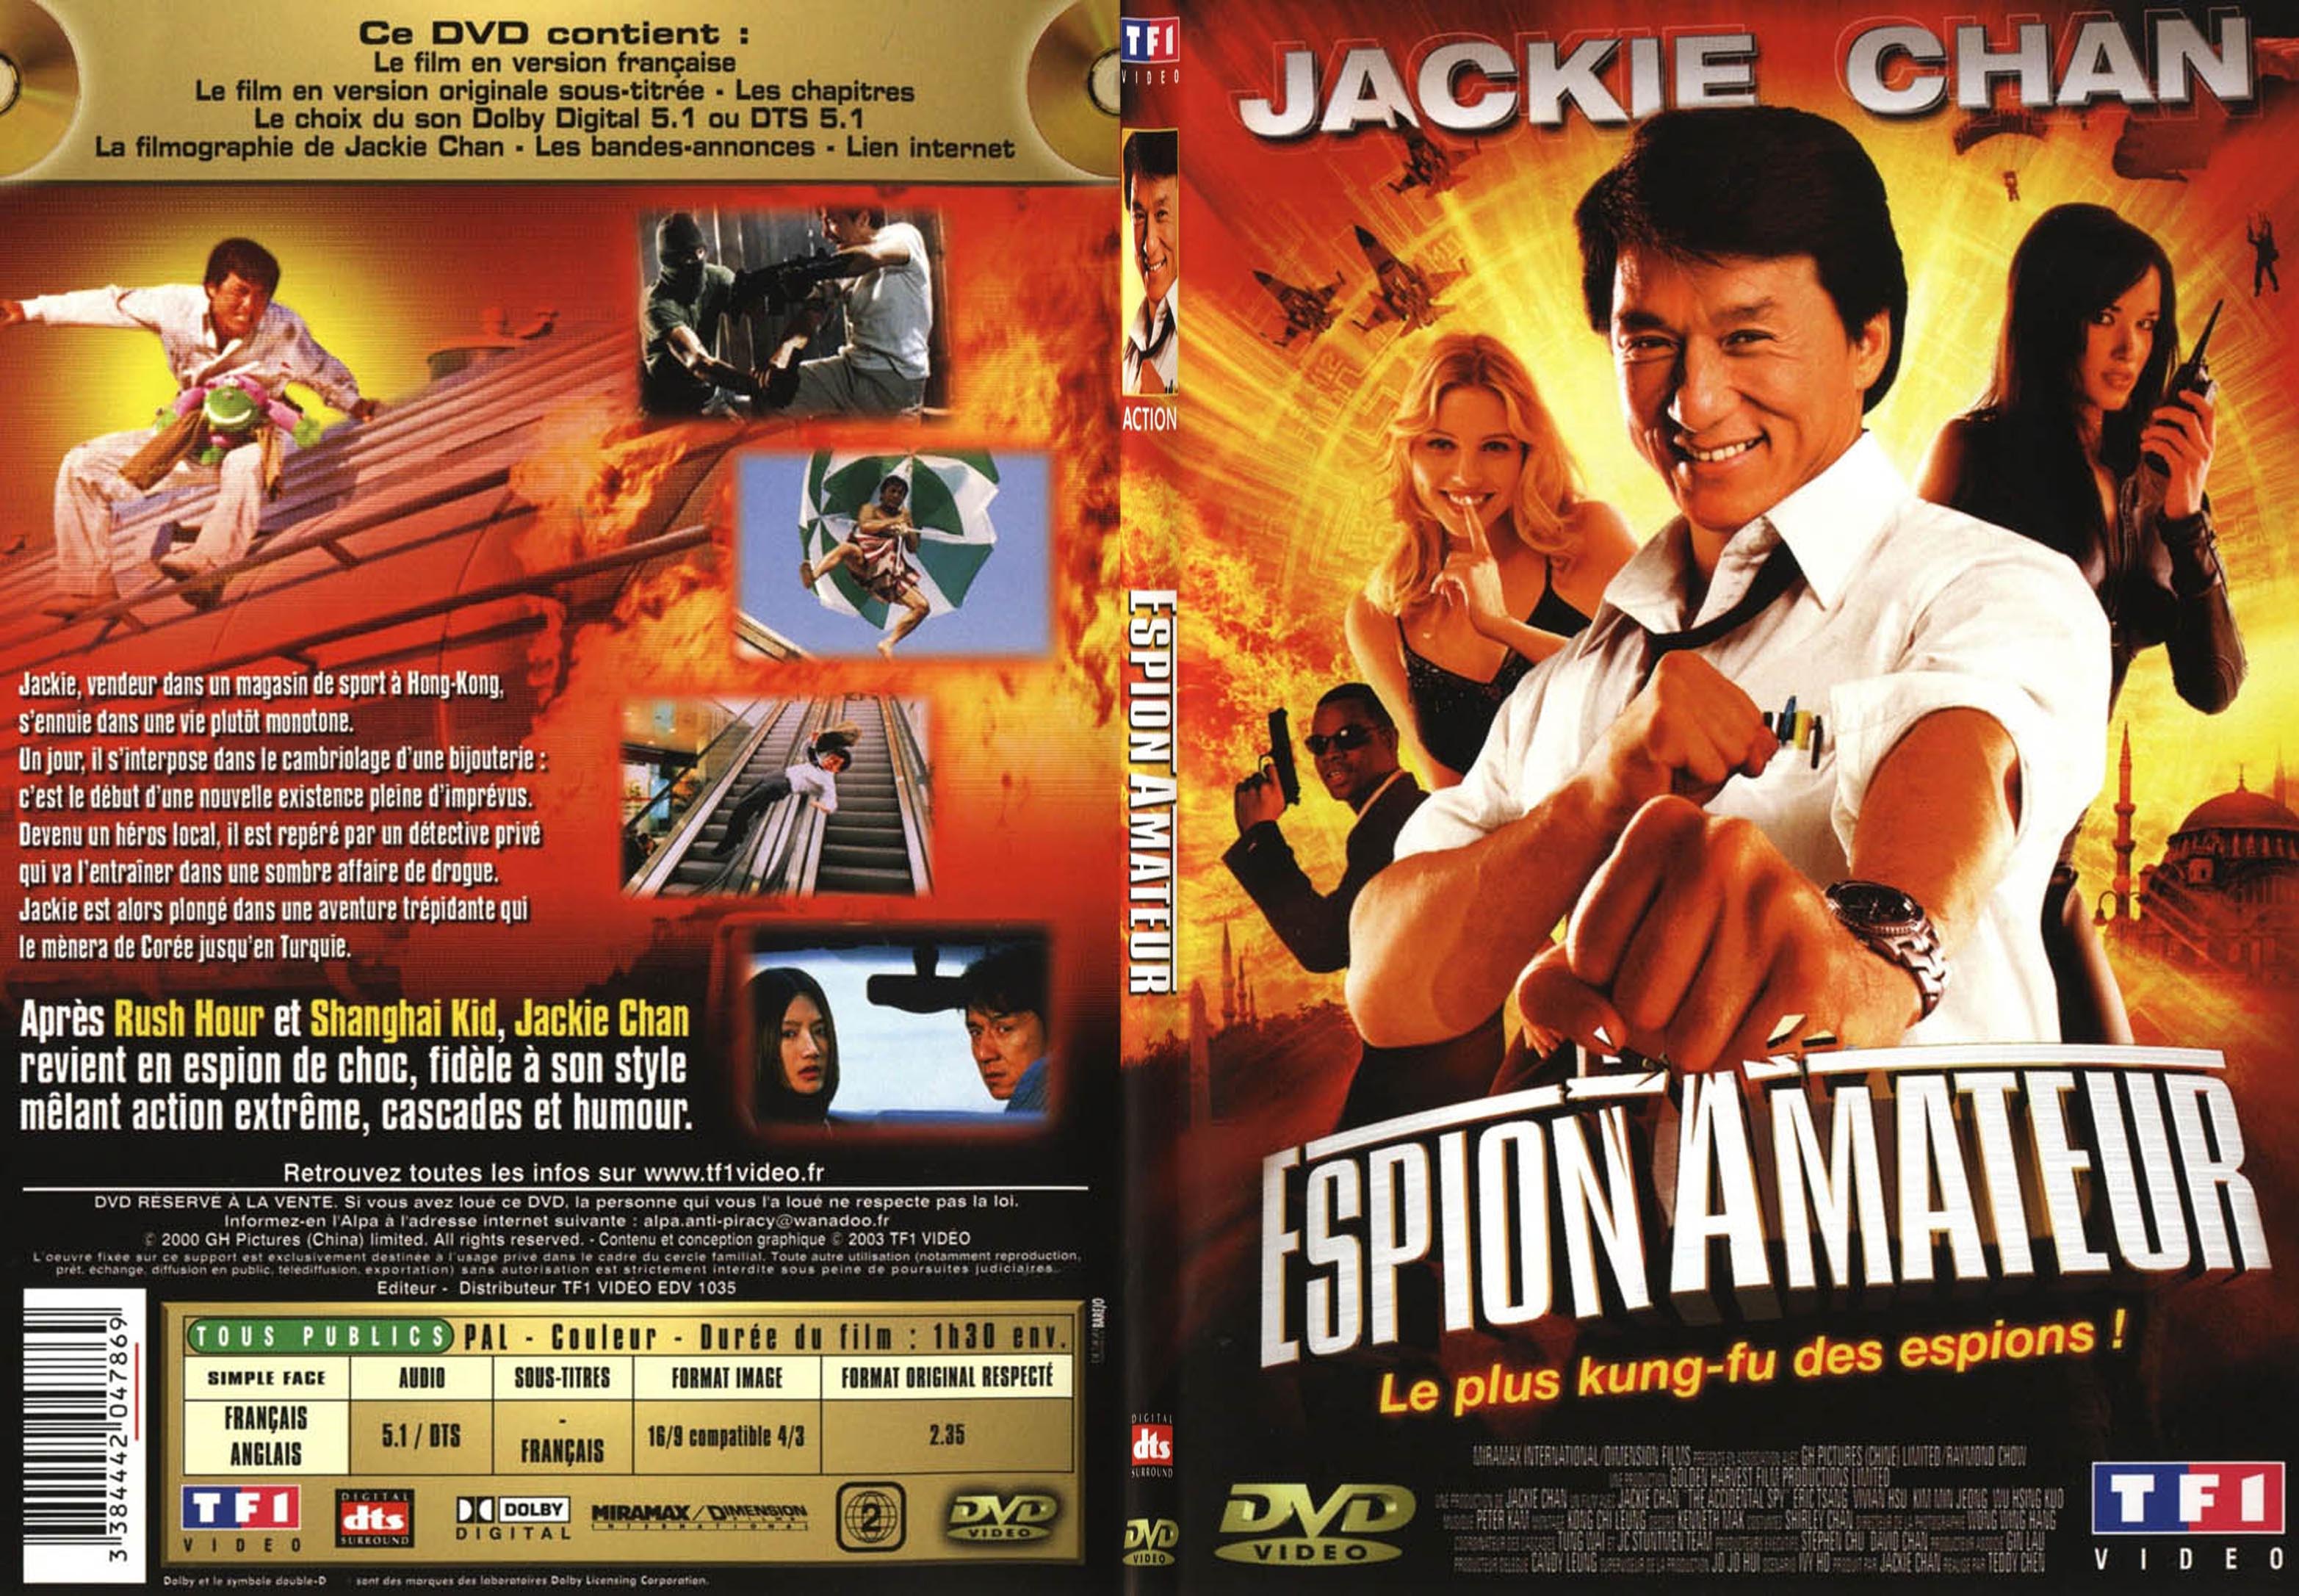 Jaquette DVD de Espion amateur pic